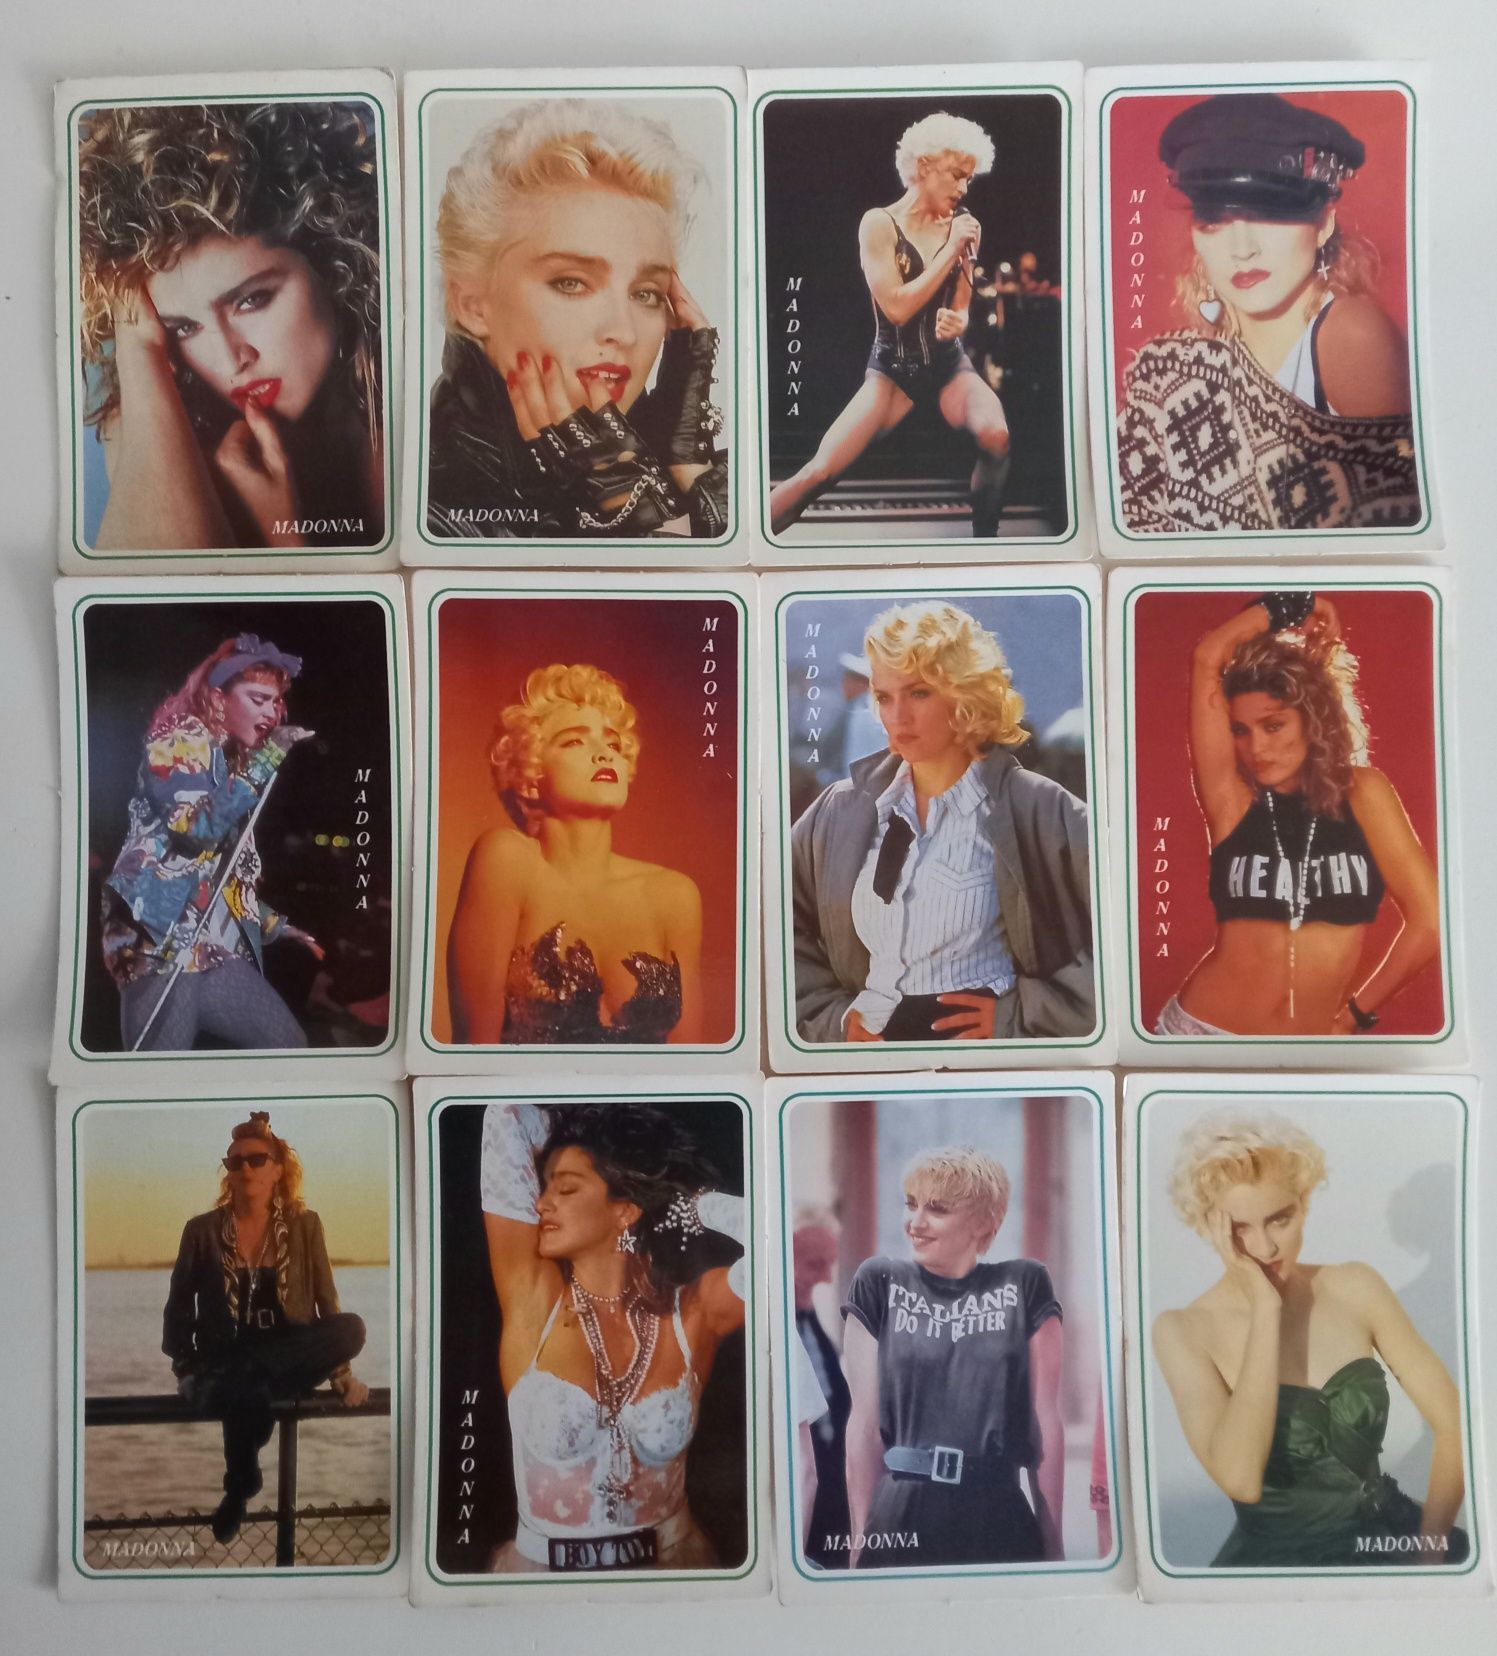 Coleção de 12 Calendários de bolso numerados tema "Madonna"